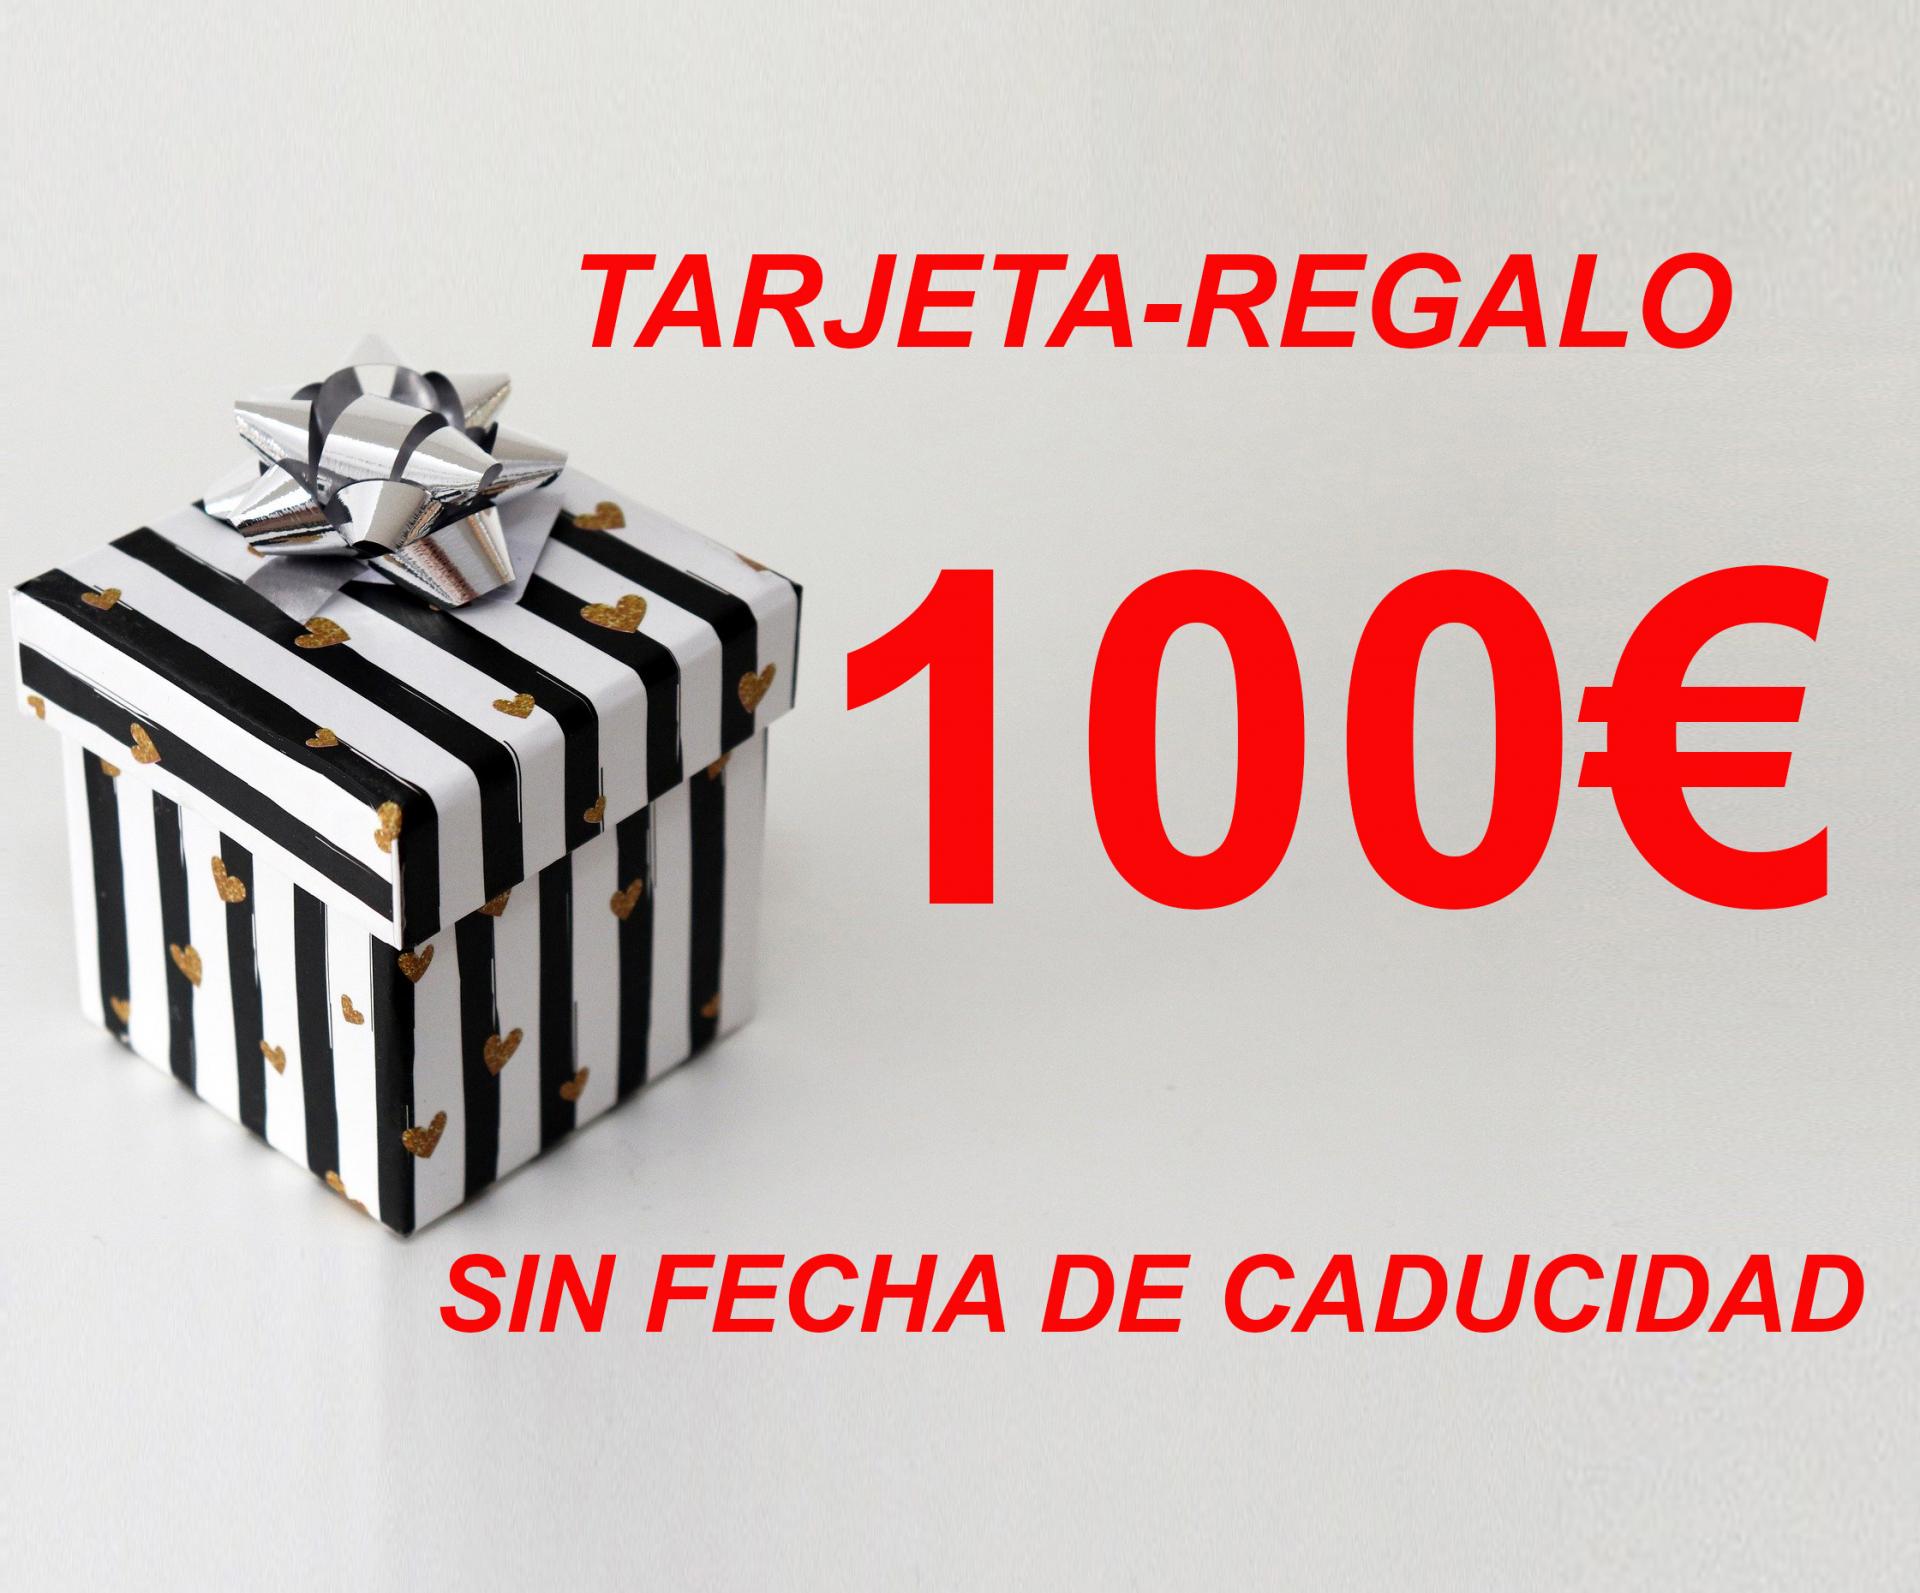 TARJETA-REGALO 100€